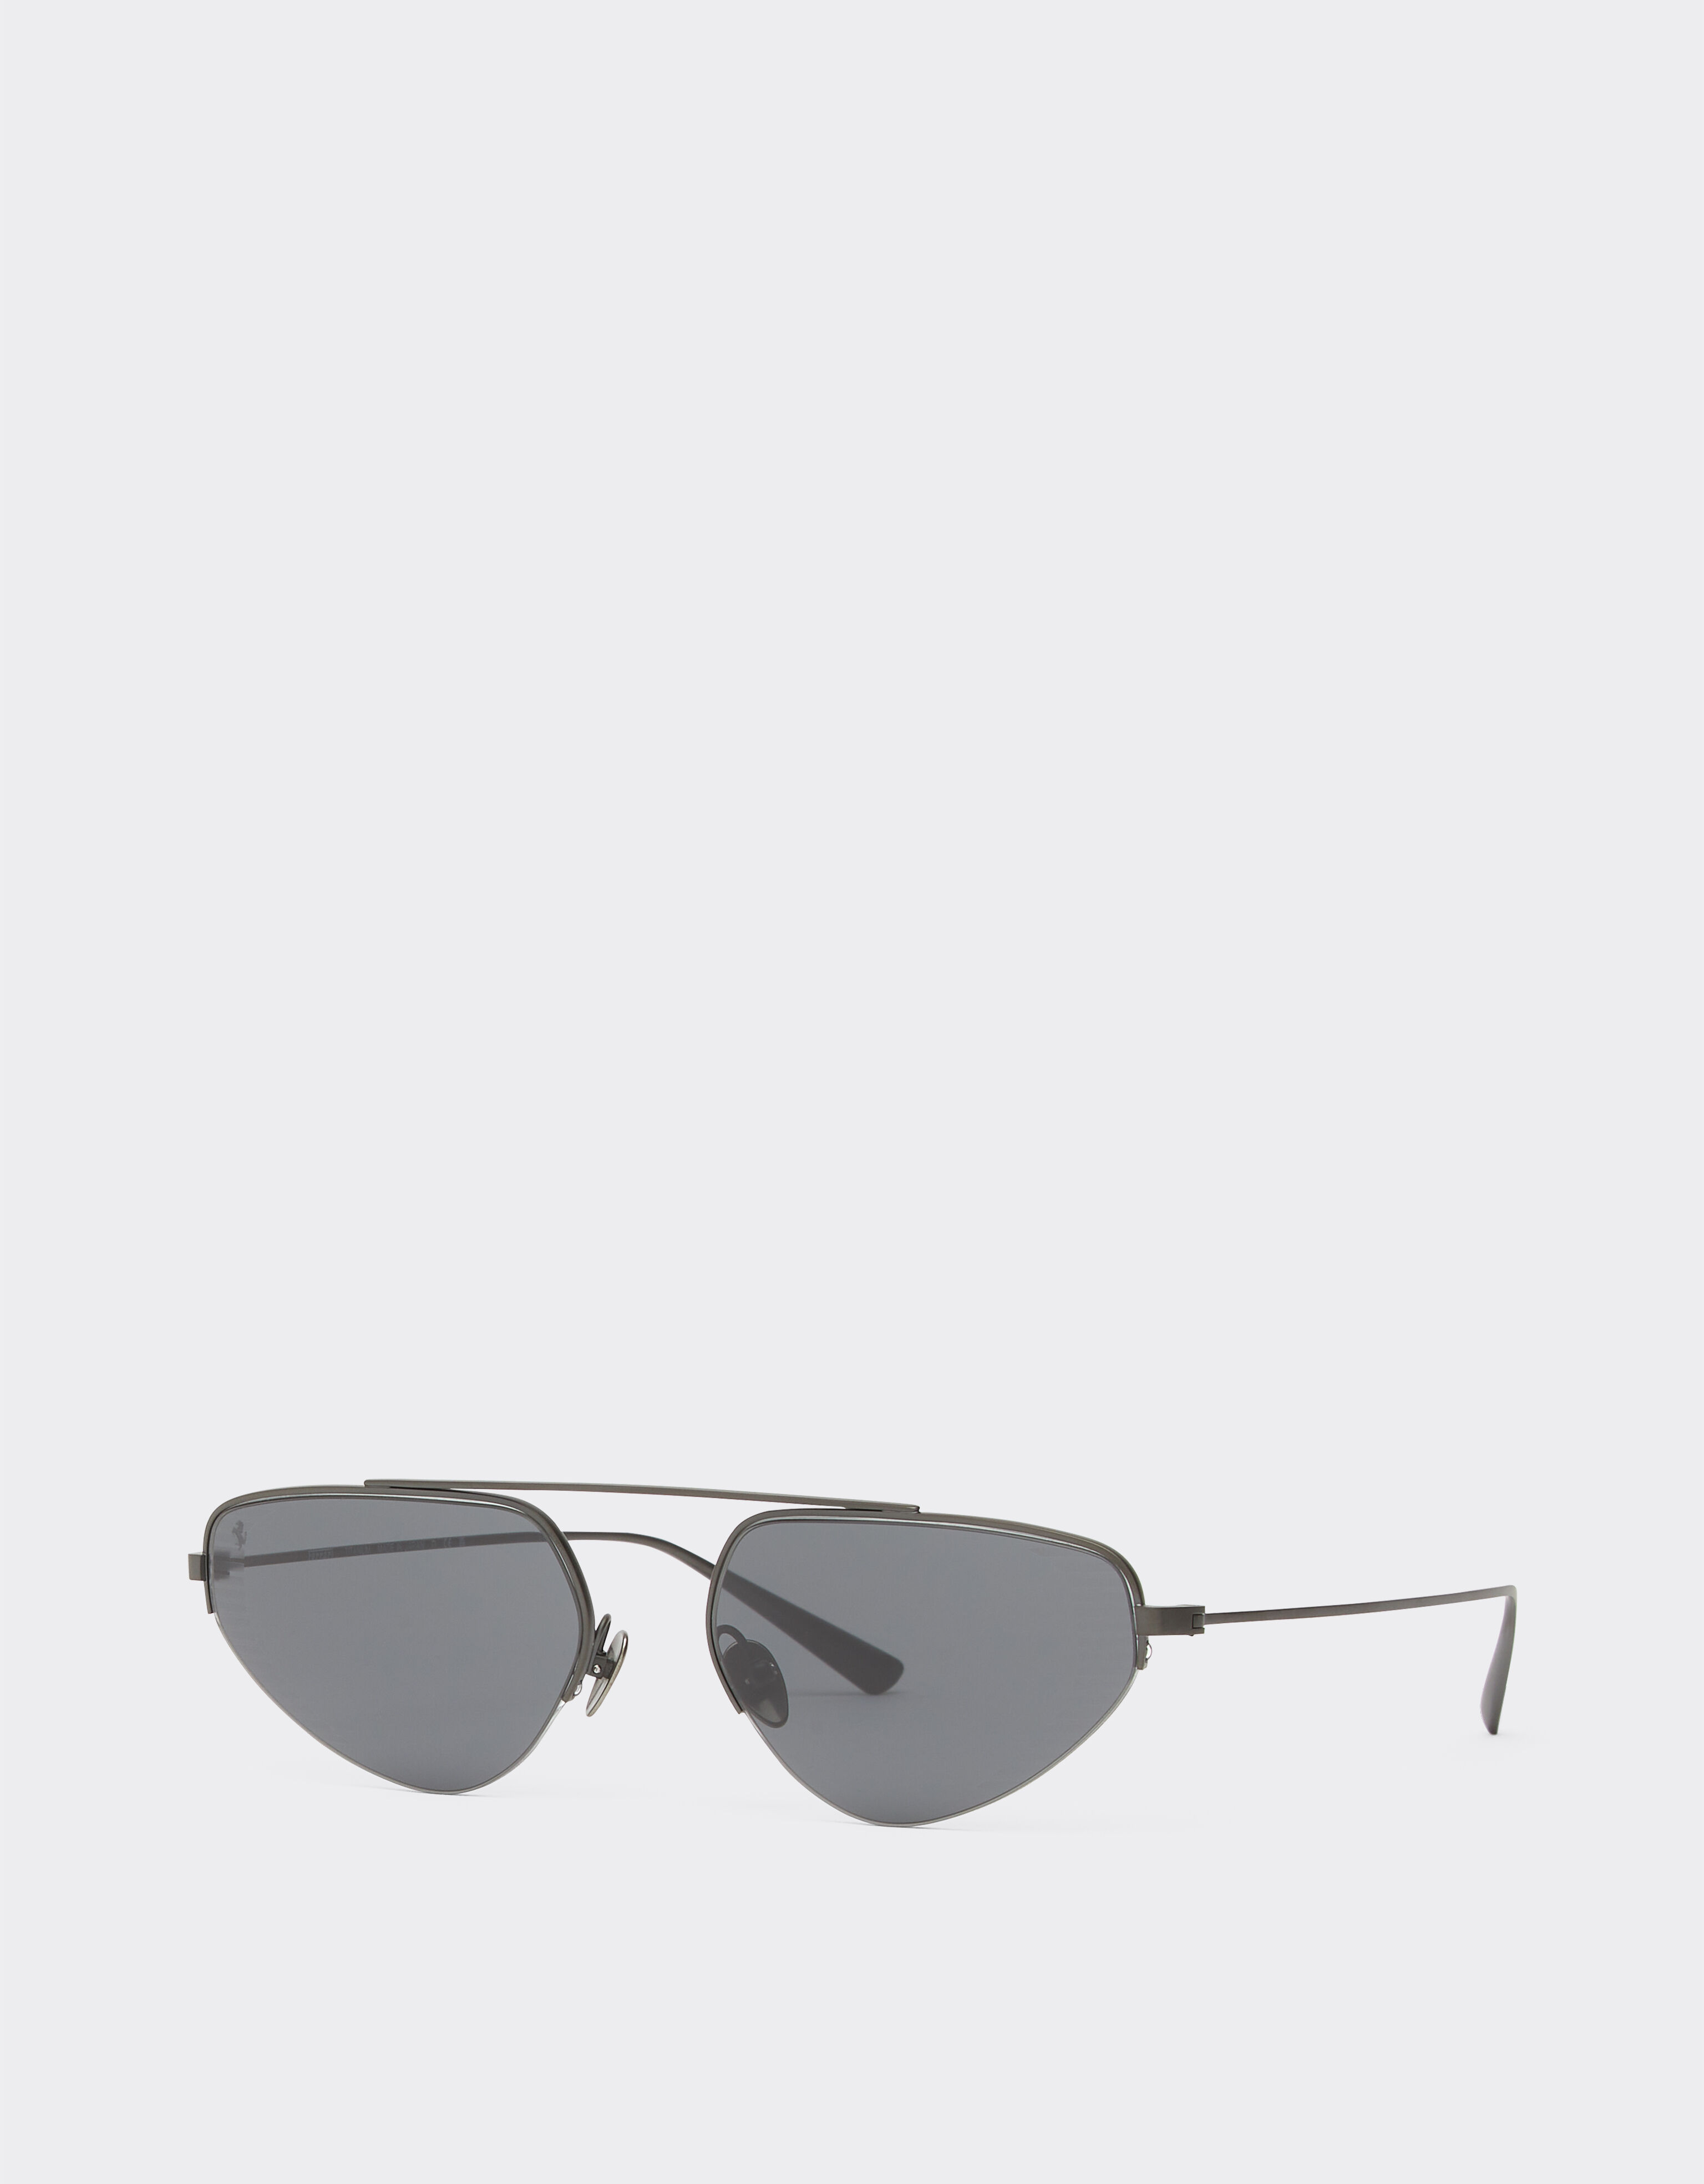 Ferrari Ferrari sunglasses in black titanium with grey lenses Black Matt F1275f